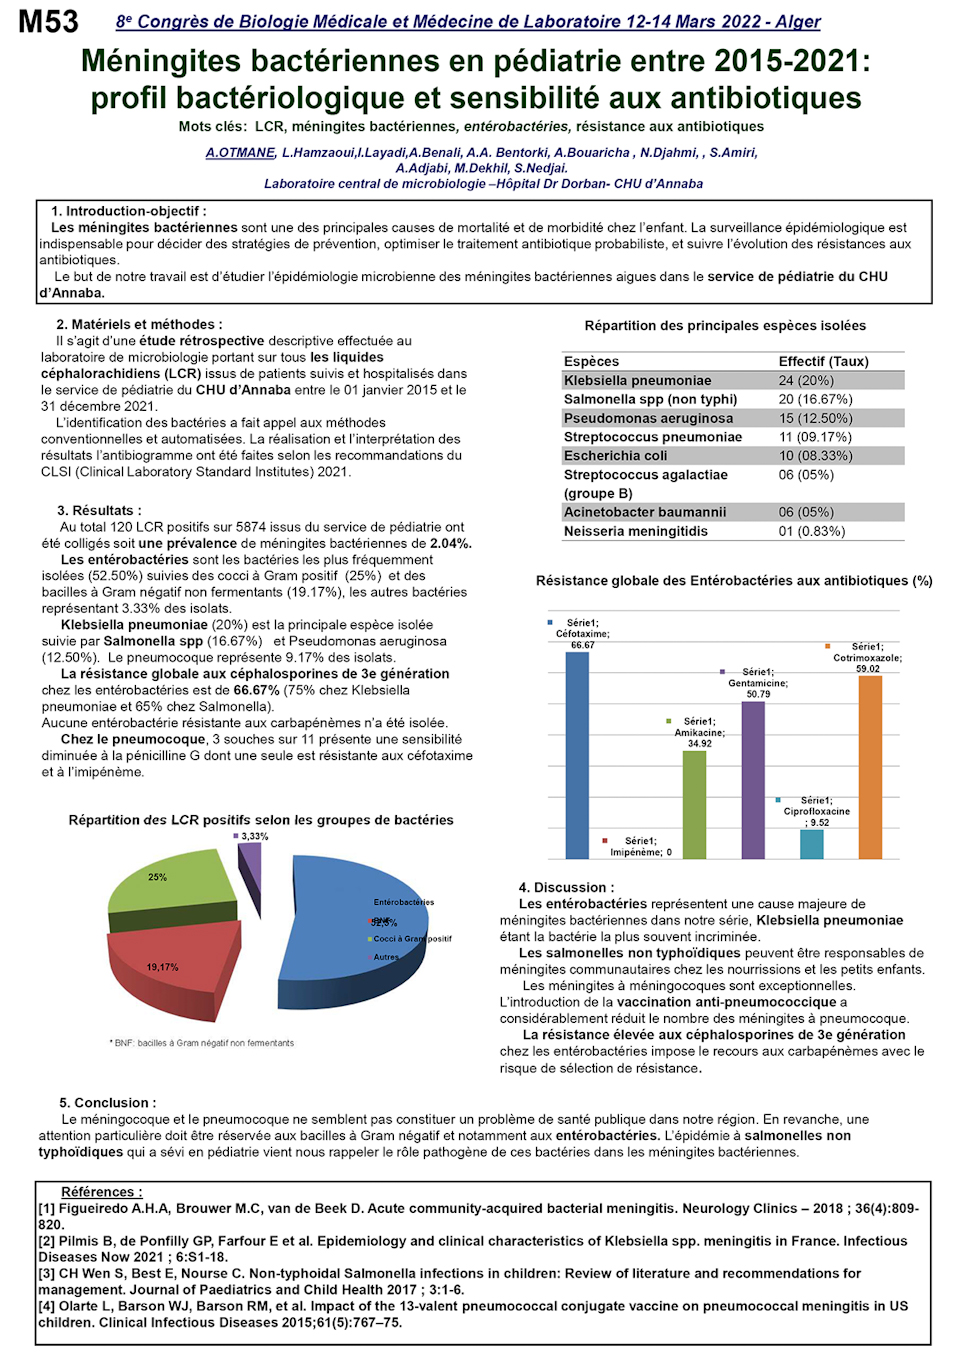 M53: Méningites bactériennes en pédiatrie entre 2015-2021: profil bactériologique et sensibilité aux antibiotiques